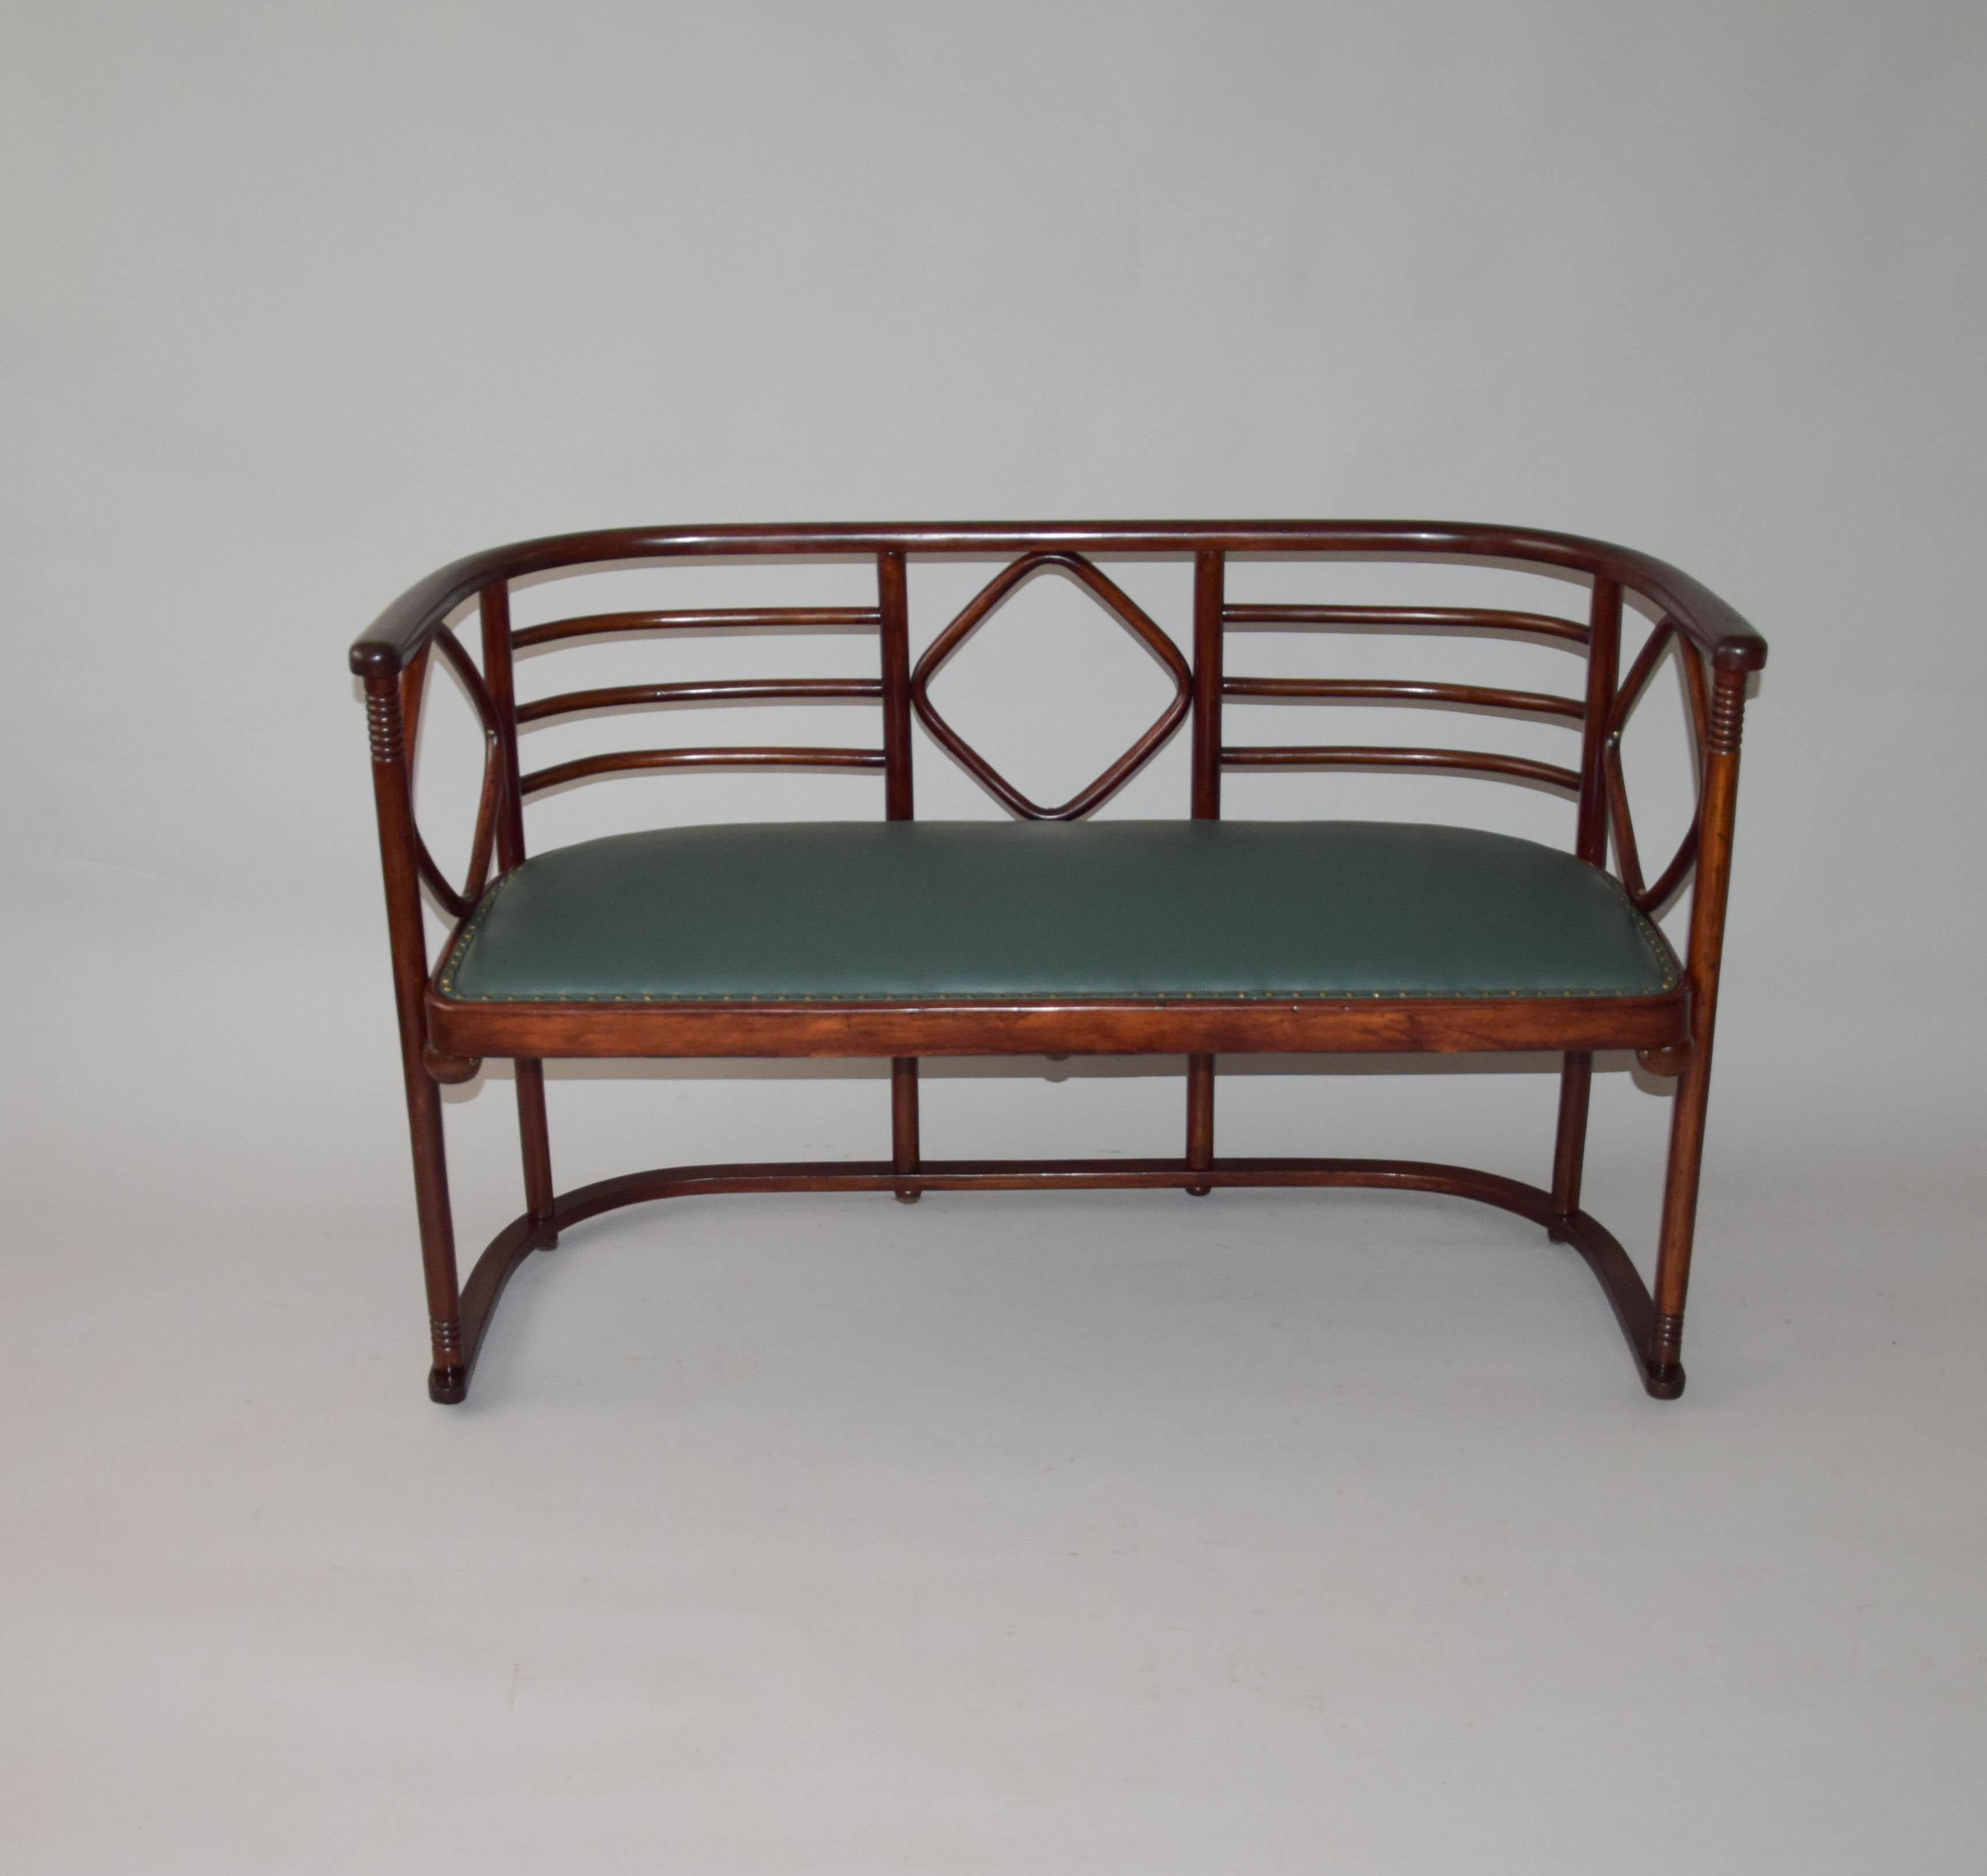 Canapé et deux fauteuils Thonet Art Nouveau, J/J Kohn, recouverts de cuir véritable, conçus en 1905 par l'architecte Josef Hoffmann pour le cabaret Fledermaus, Autriche, entièrement restaurés, nouvellement recouverts de cuir véritable, vachette de